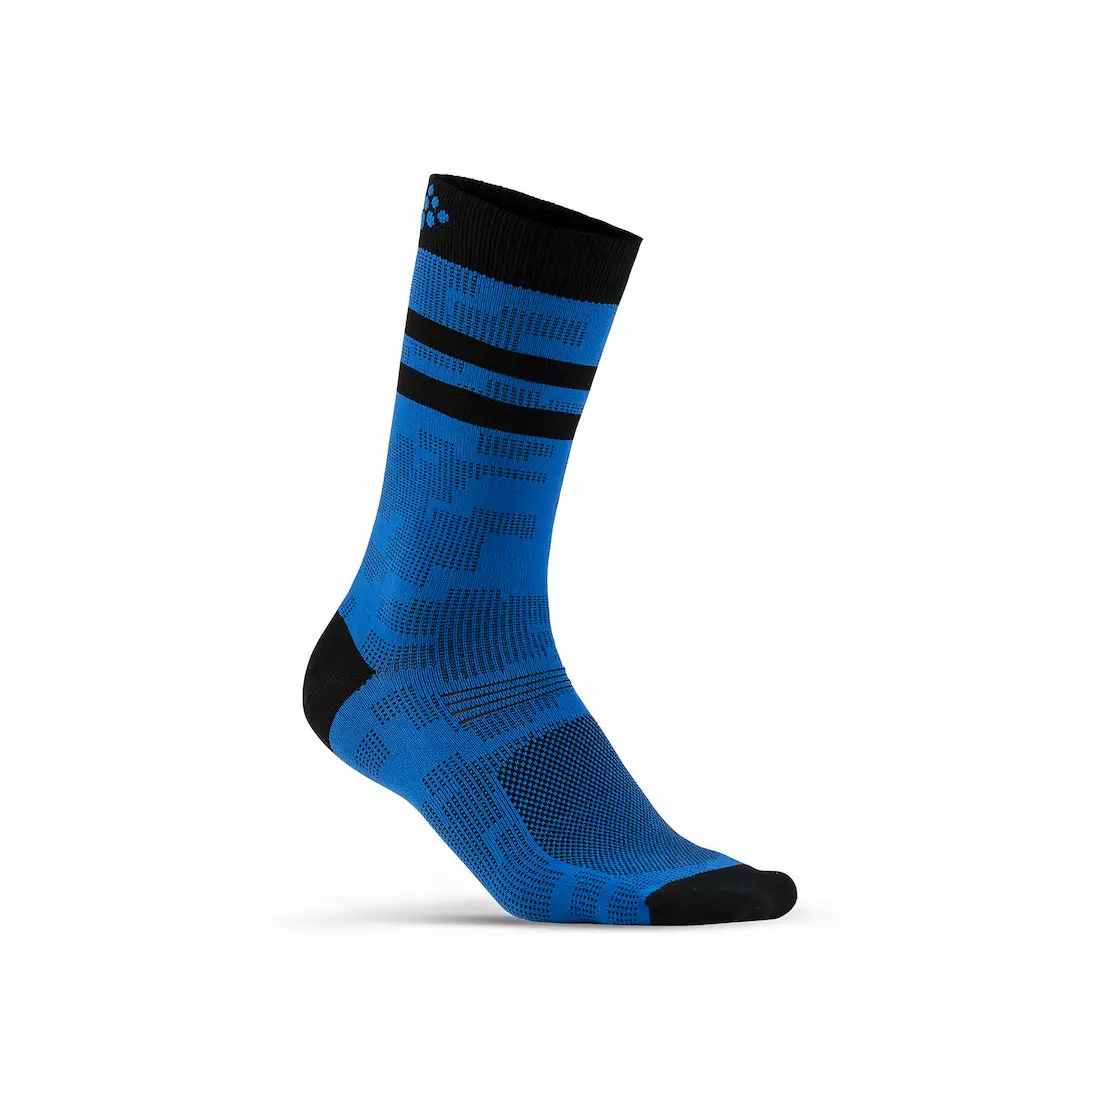 CRAFT Pattern Sock 1906061-356000 - Sports socks